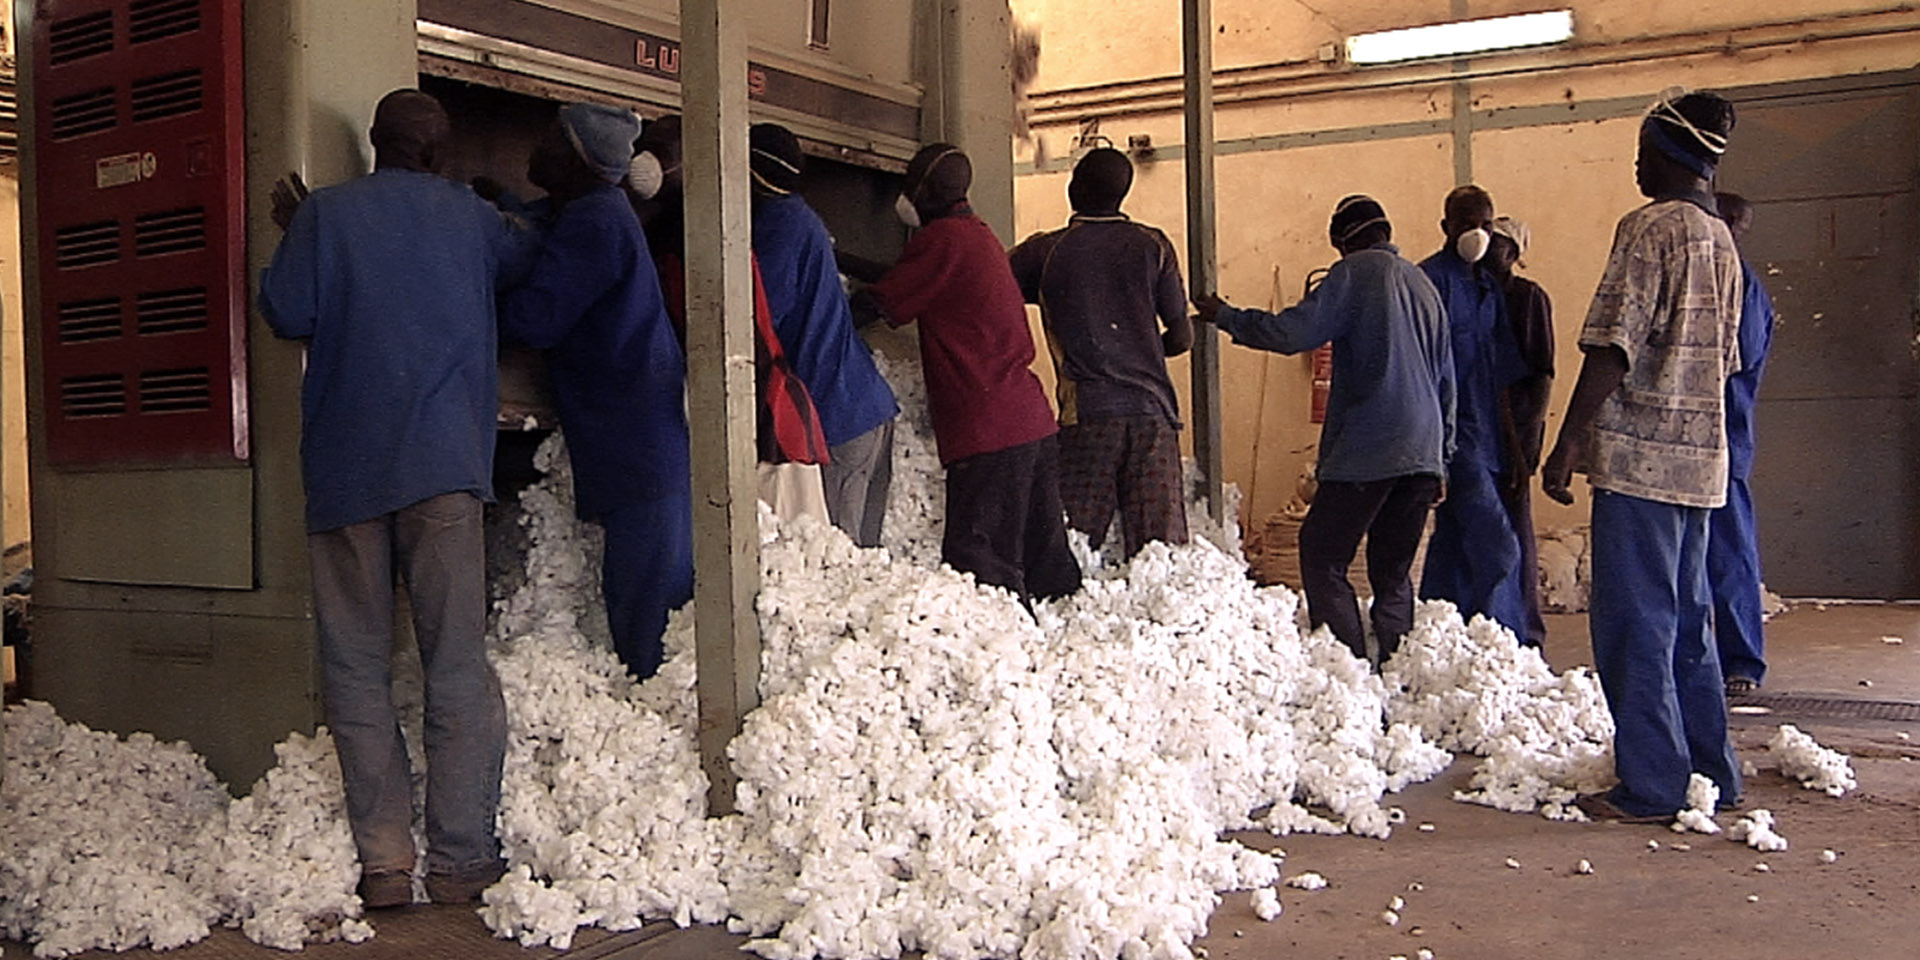 hessnatur | "Bio-Baumwolle in Burkina Faso" | Image Documentary